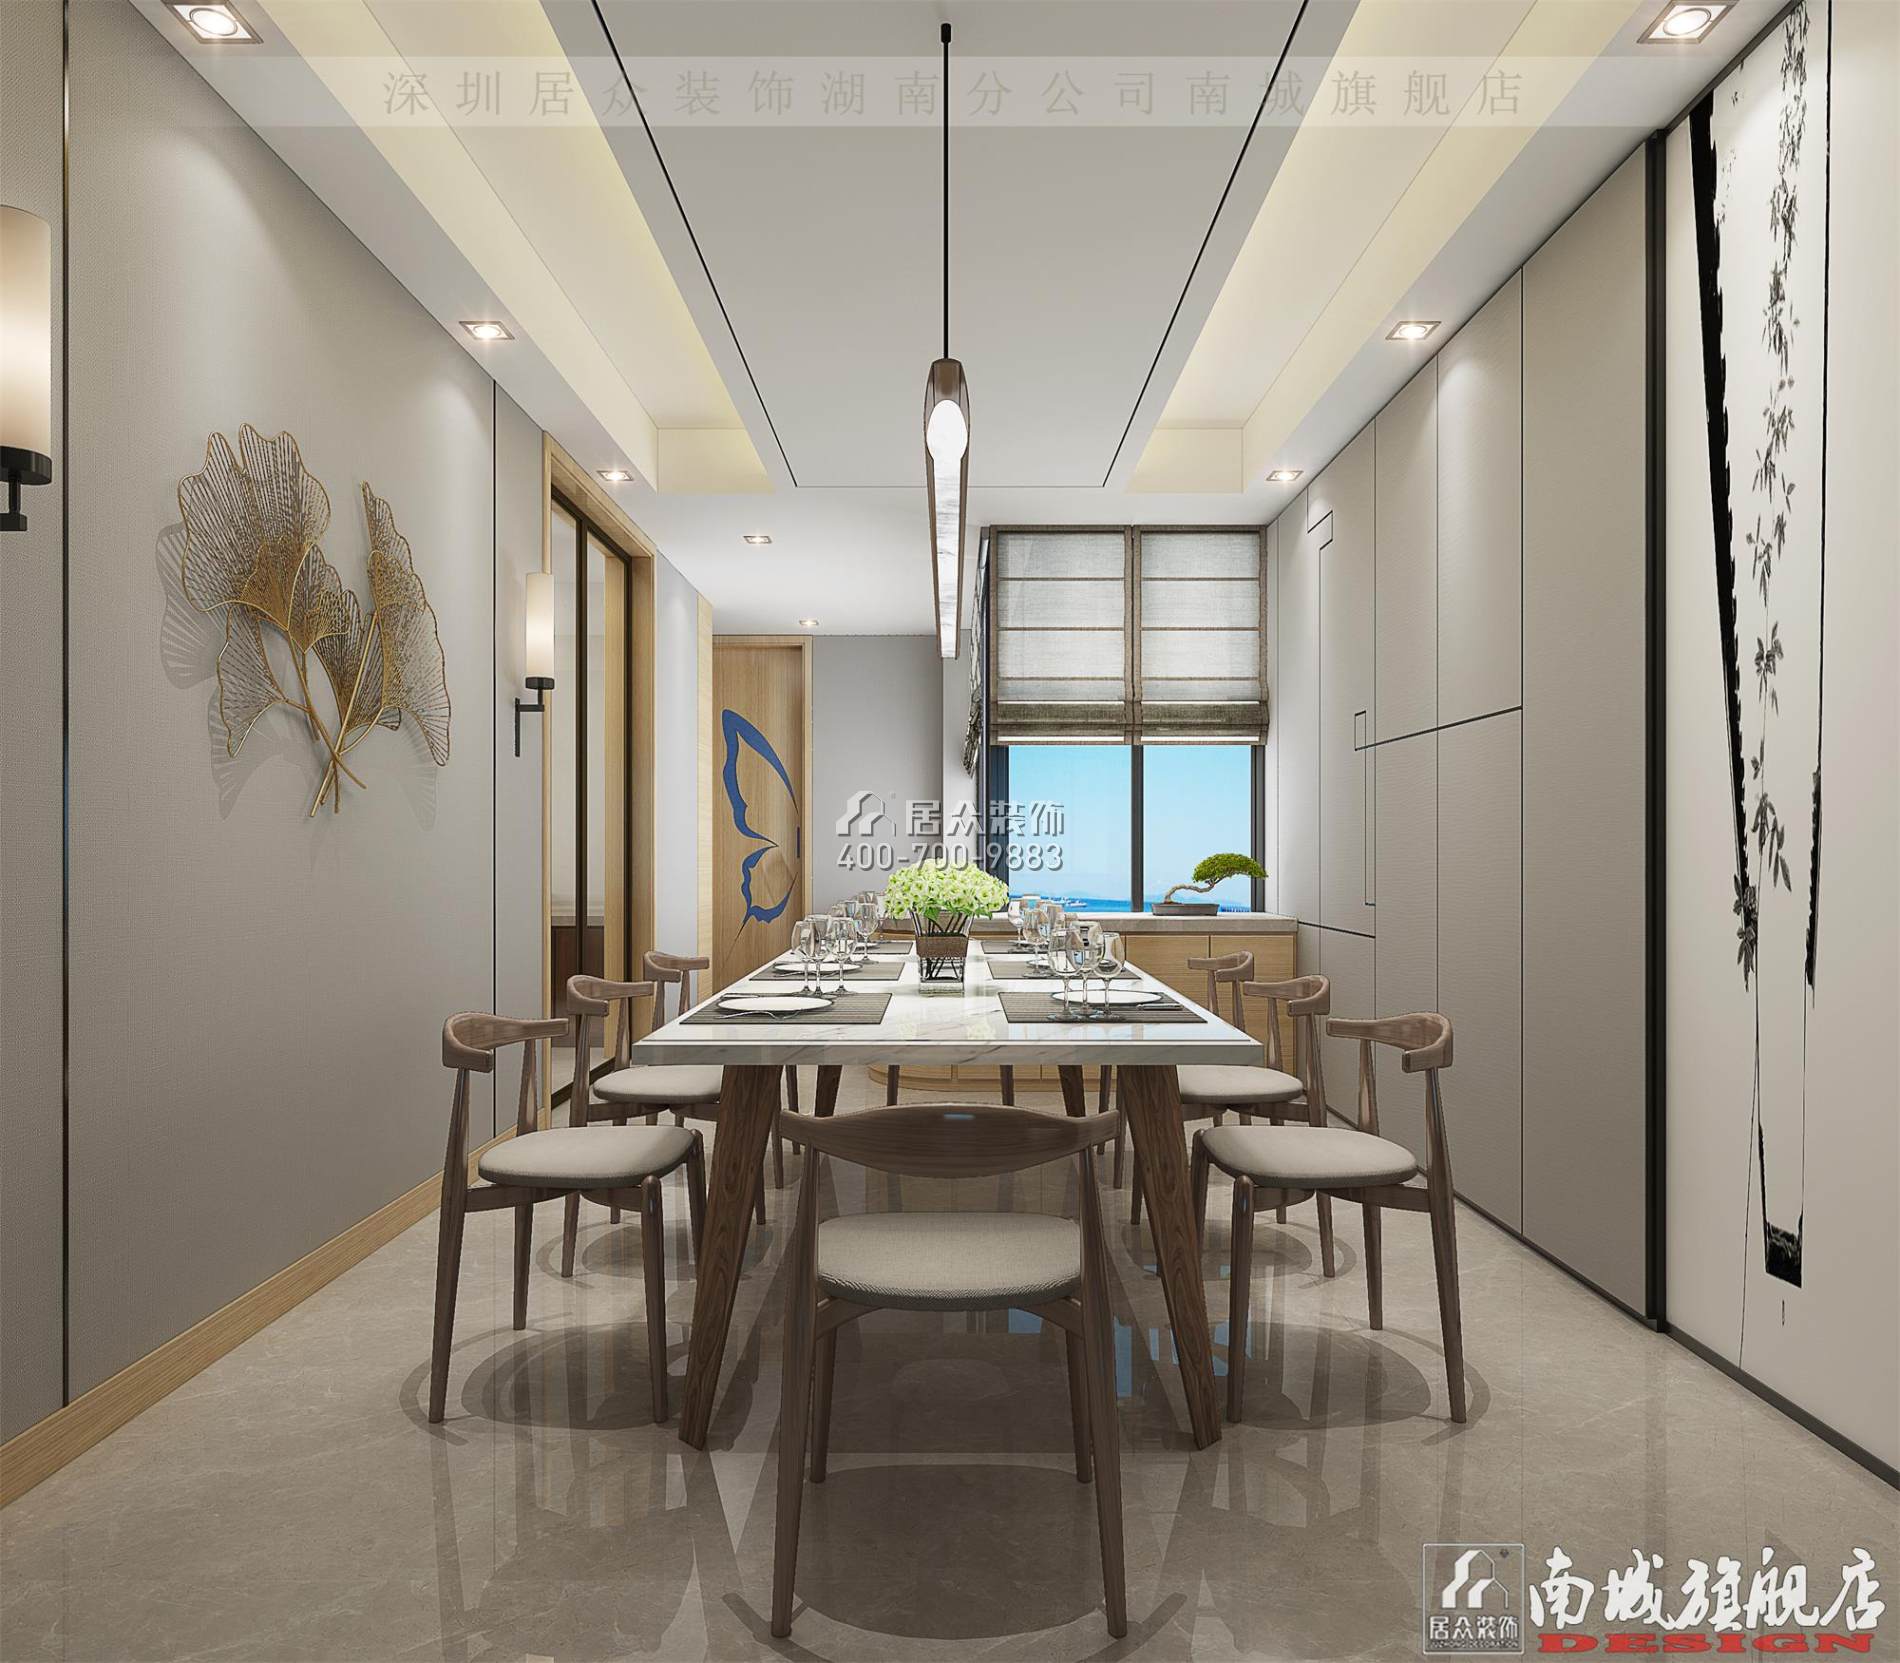 中建江山壹号232平方米中式风格平层户型餐厅（中国）科技有限公司官网效果图